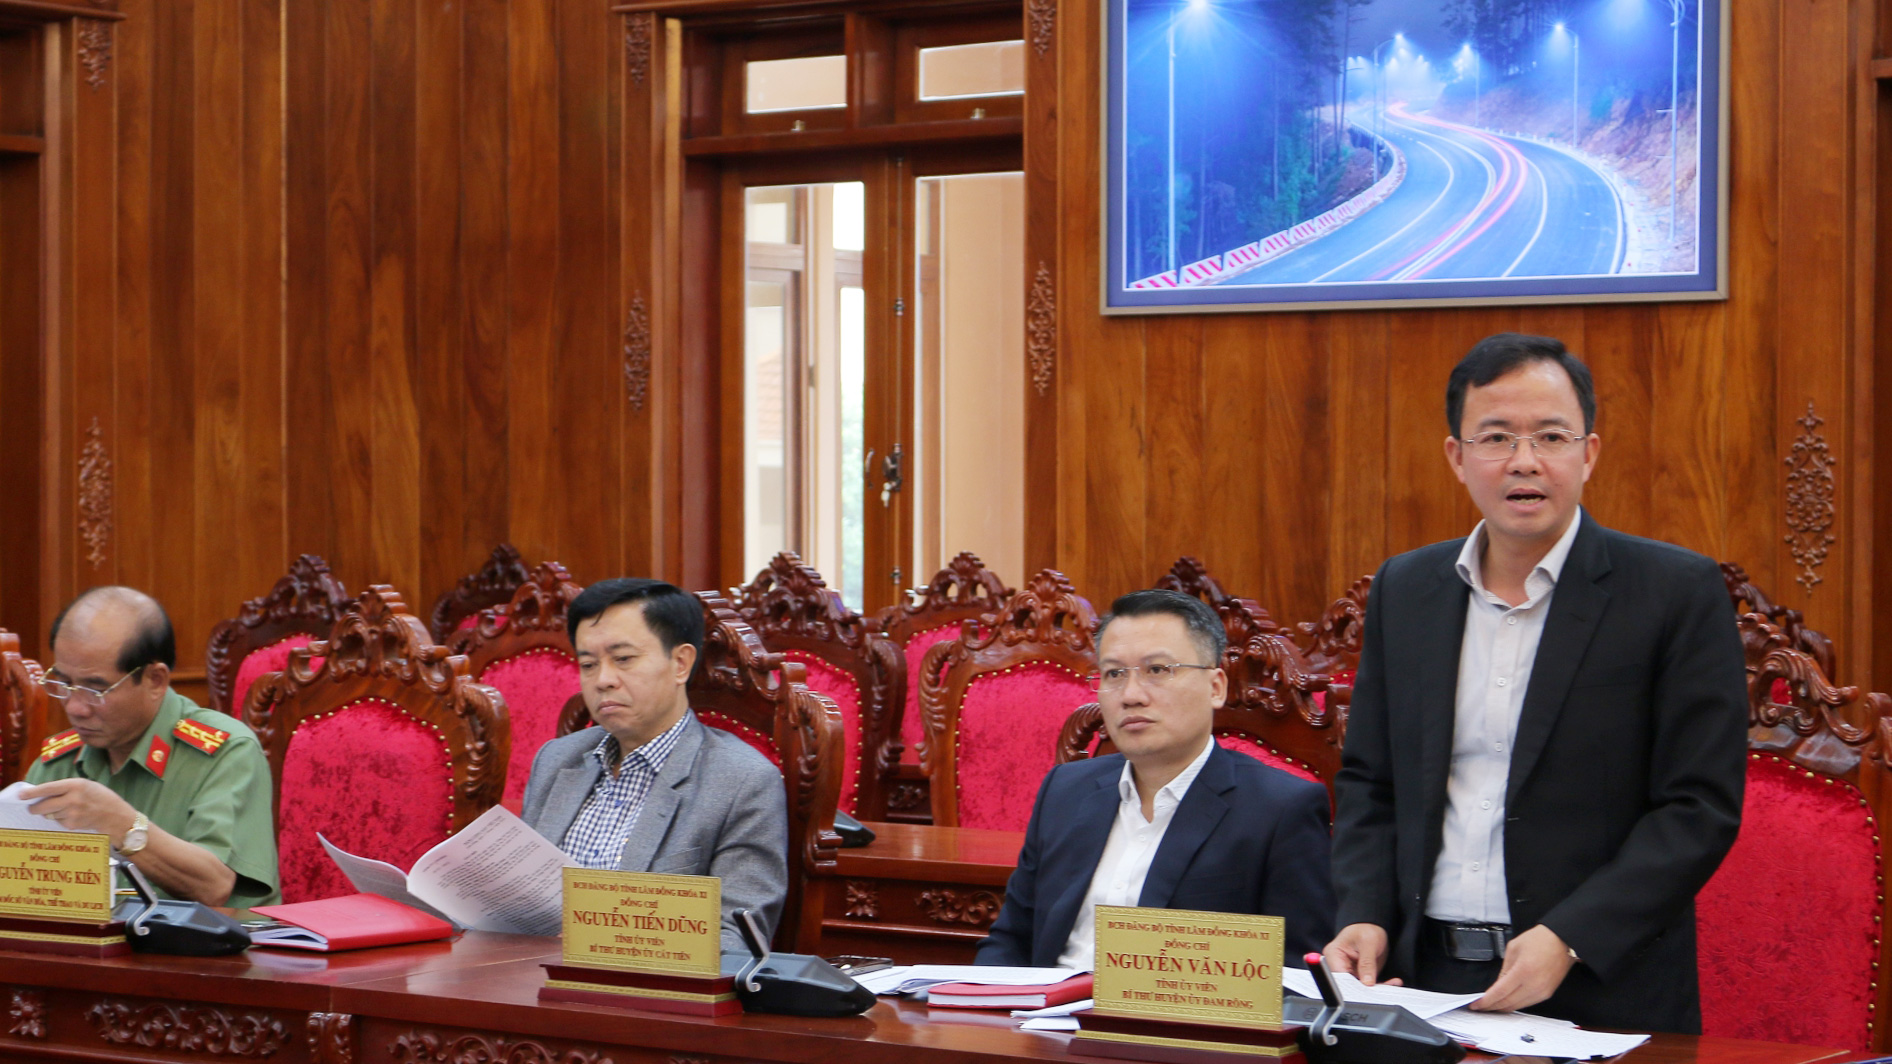 Bí thư Huyện ủy Đam Rông Nguyễn Văn Lộc thảo luận về khó khăn, vướng mắc các trình tự, thủ tục bầu cử trong quá trình tổ chức đại hội